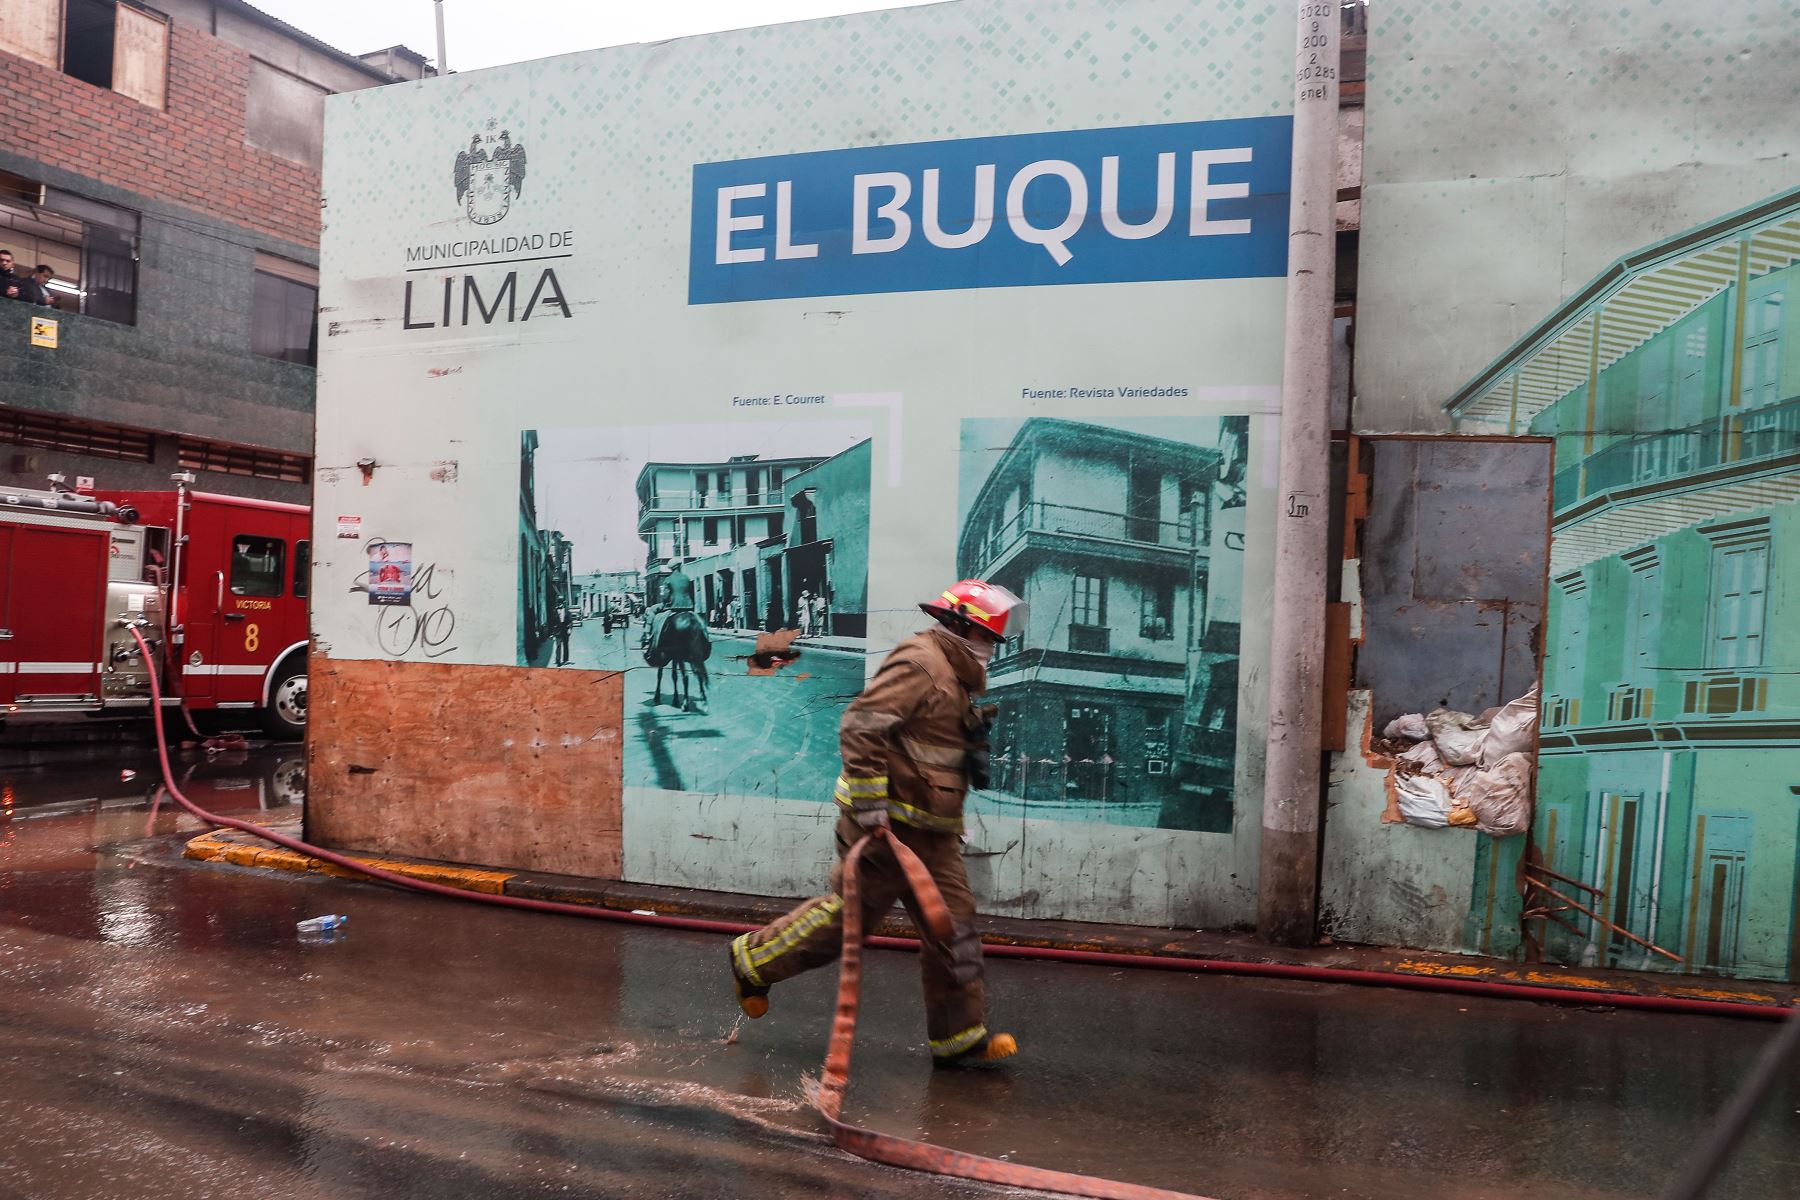 Incendio se registra  en inmueble de tres pisos ubicado en la cuadra 2 del jirón Cangallo, en la zona de Barrios Altos, Centro de Lima.
El inmueble es conocido como ‘El buque’, construido en siglo XIX ubicado en Barrios Altos.
Foto: ANDINA/Renato Pajuelo